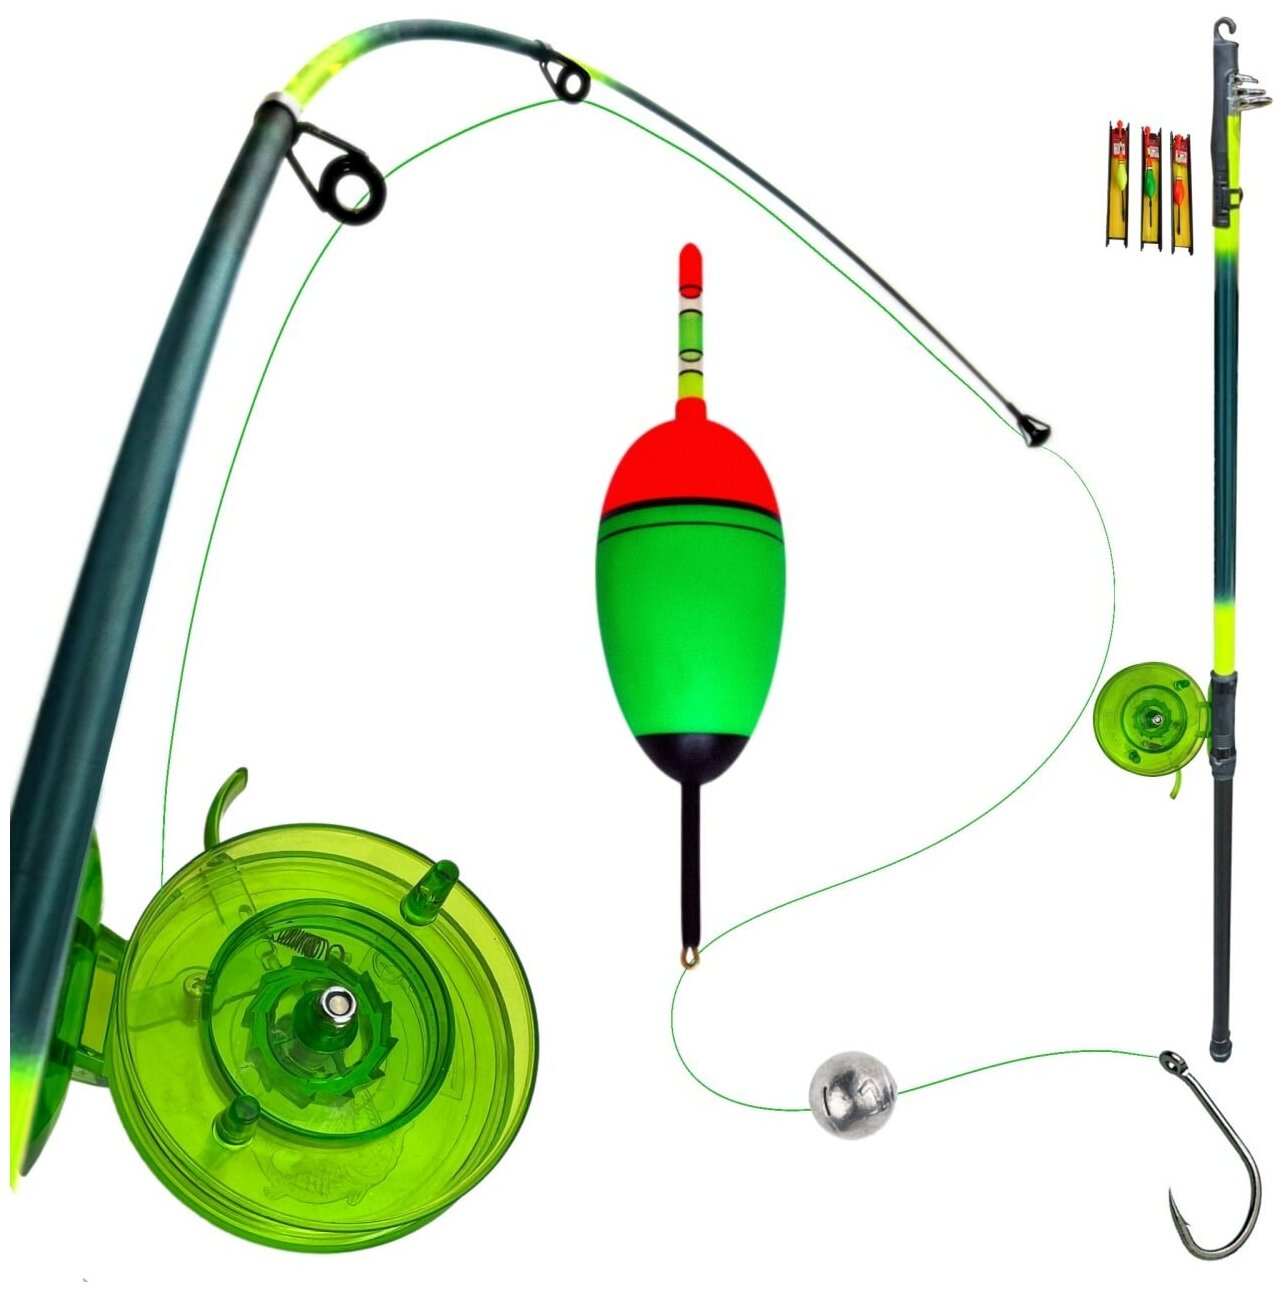 Удочка для ловли на поплавок с набором оснаски, телескопическая, зеленая, 5 м. Набор удочка и оснастка.